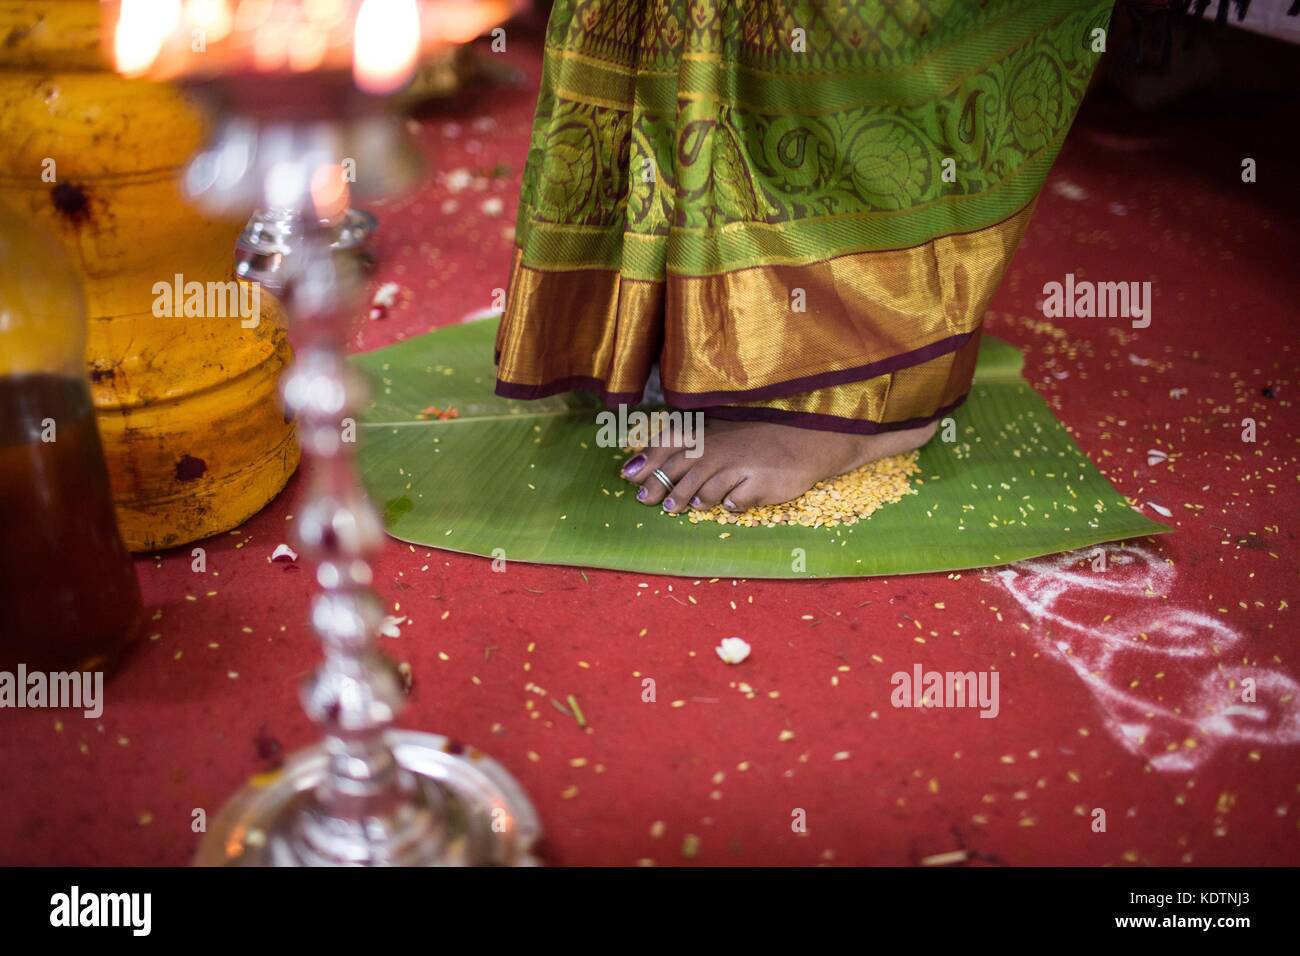 Indian wedding rituals, indoor shots Stock Photo